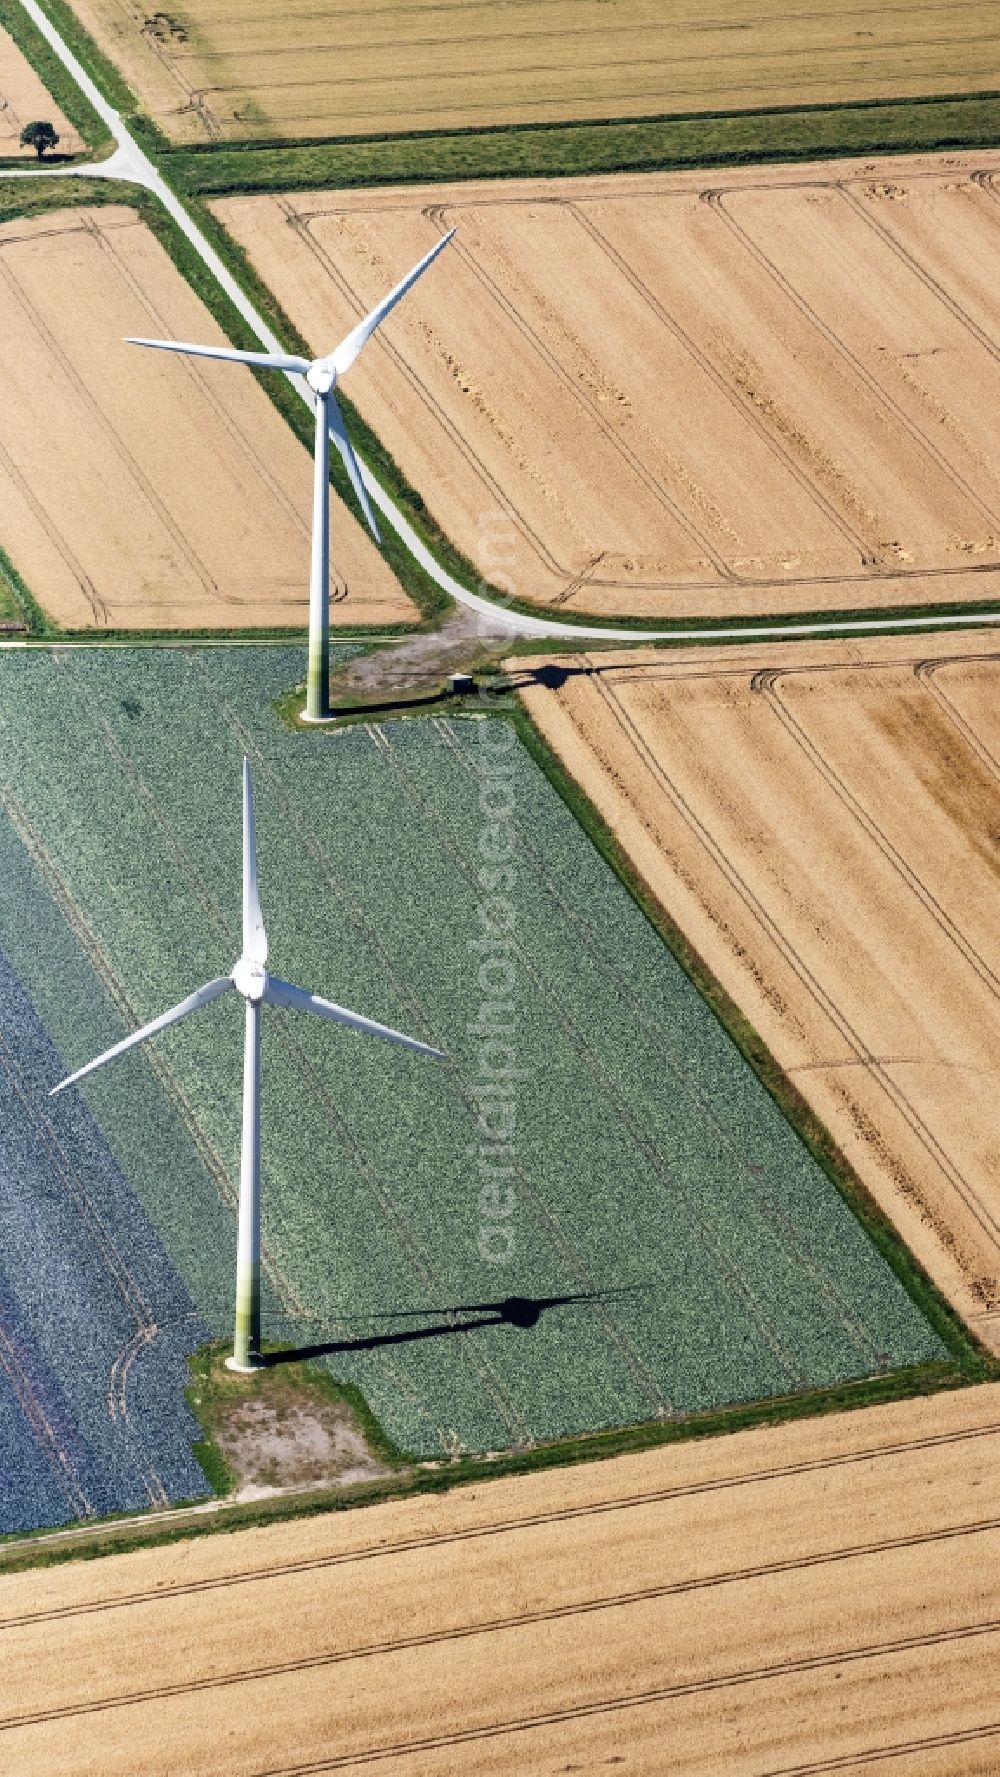 Aerial image Brokreihe - Wind turbine windmills on a field in Brokreihe in the state Schleswig-Holstein, Germany